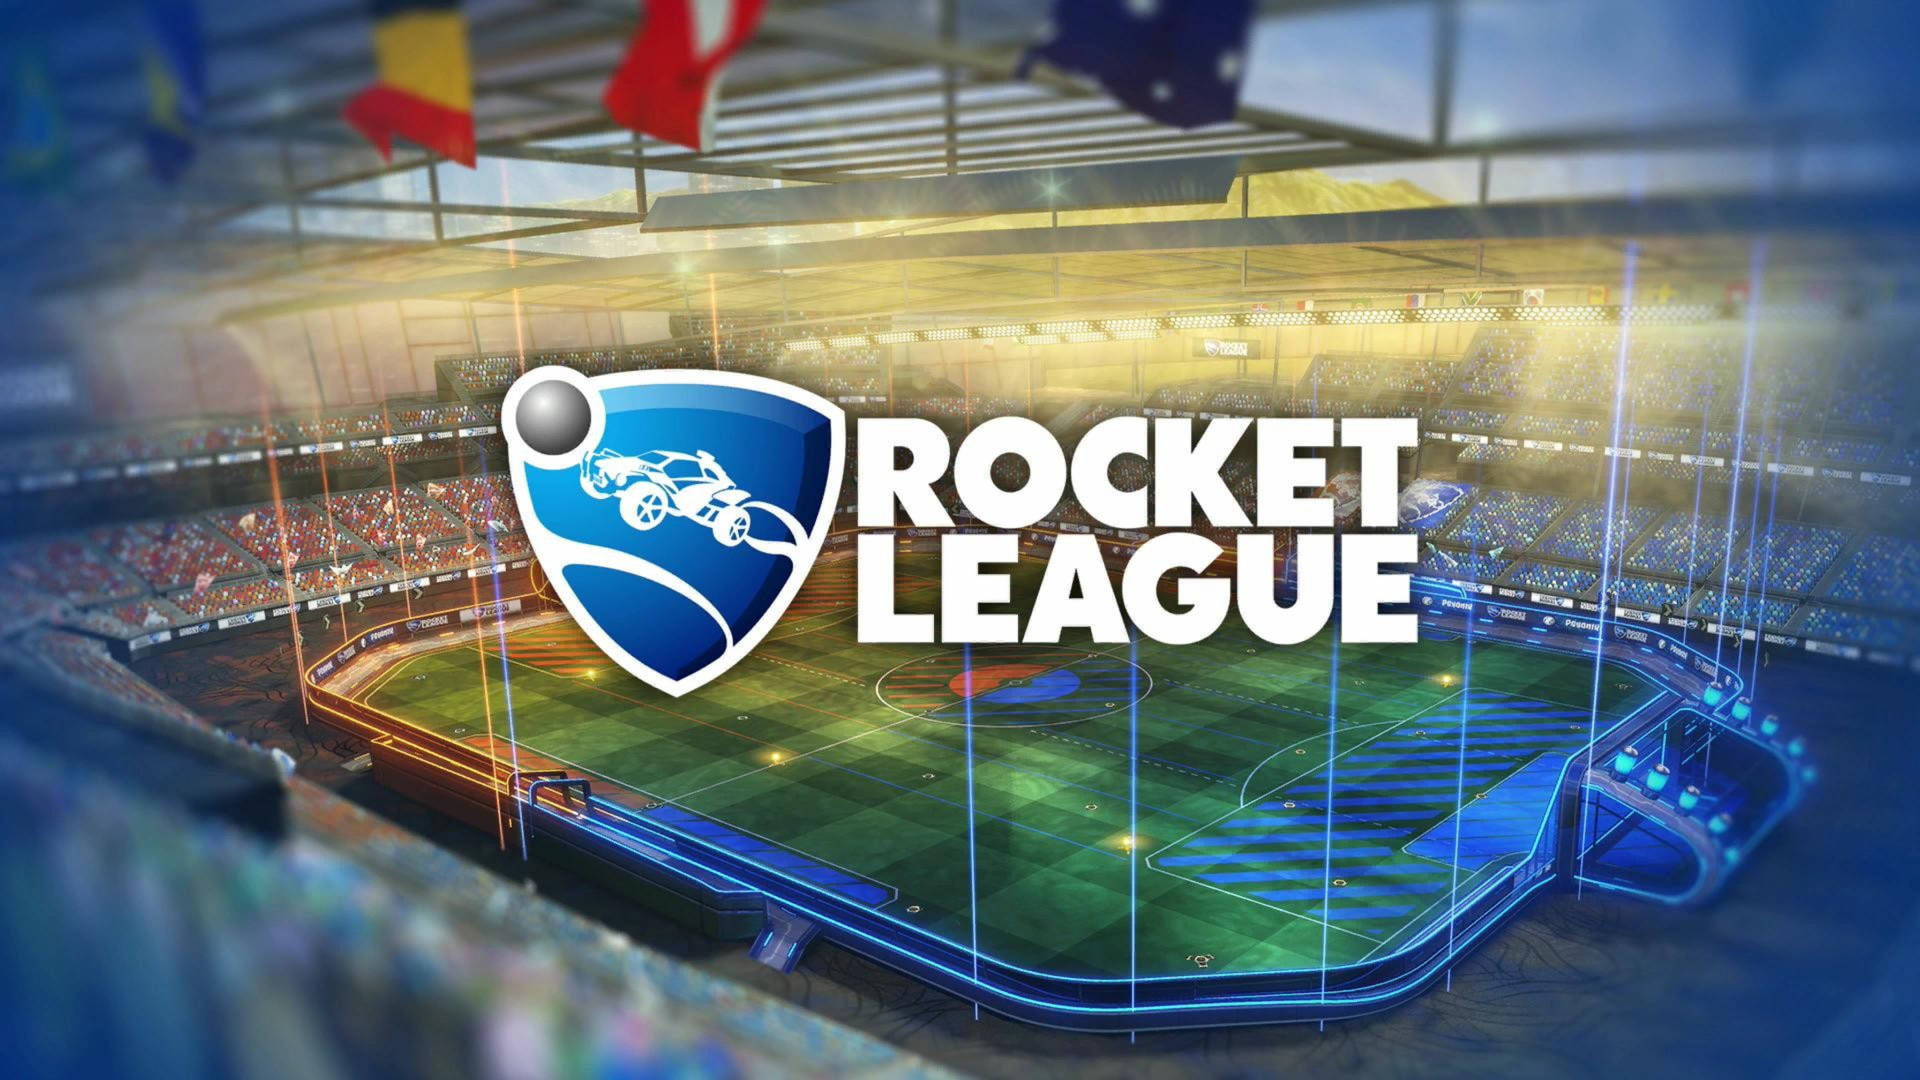 Rocket League Hd-logo På Marken Wallpaper